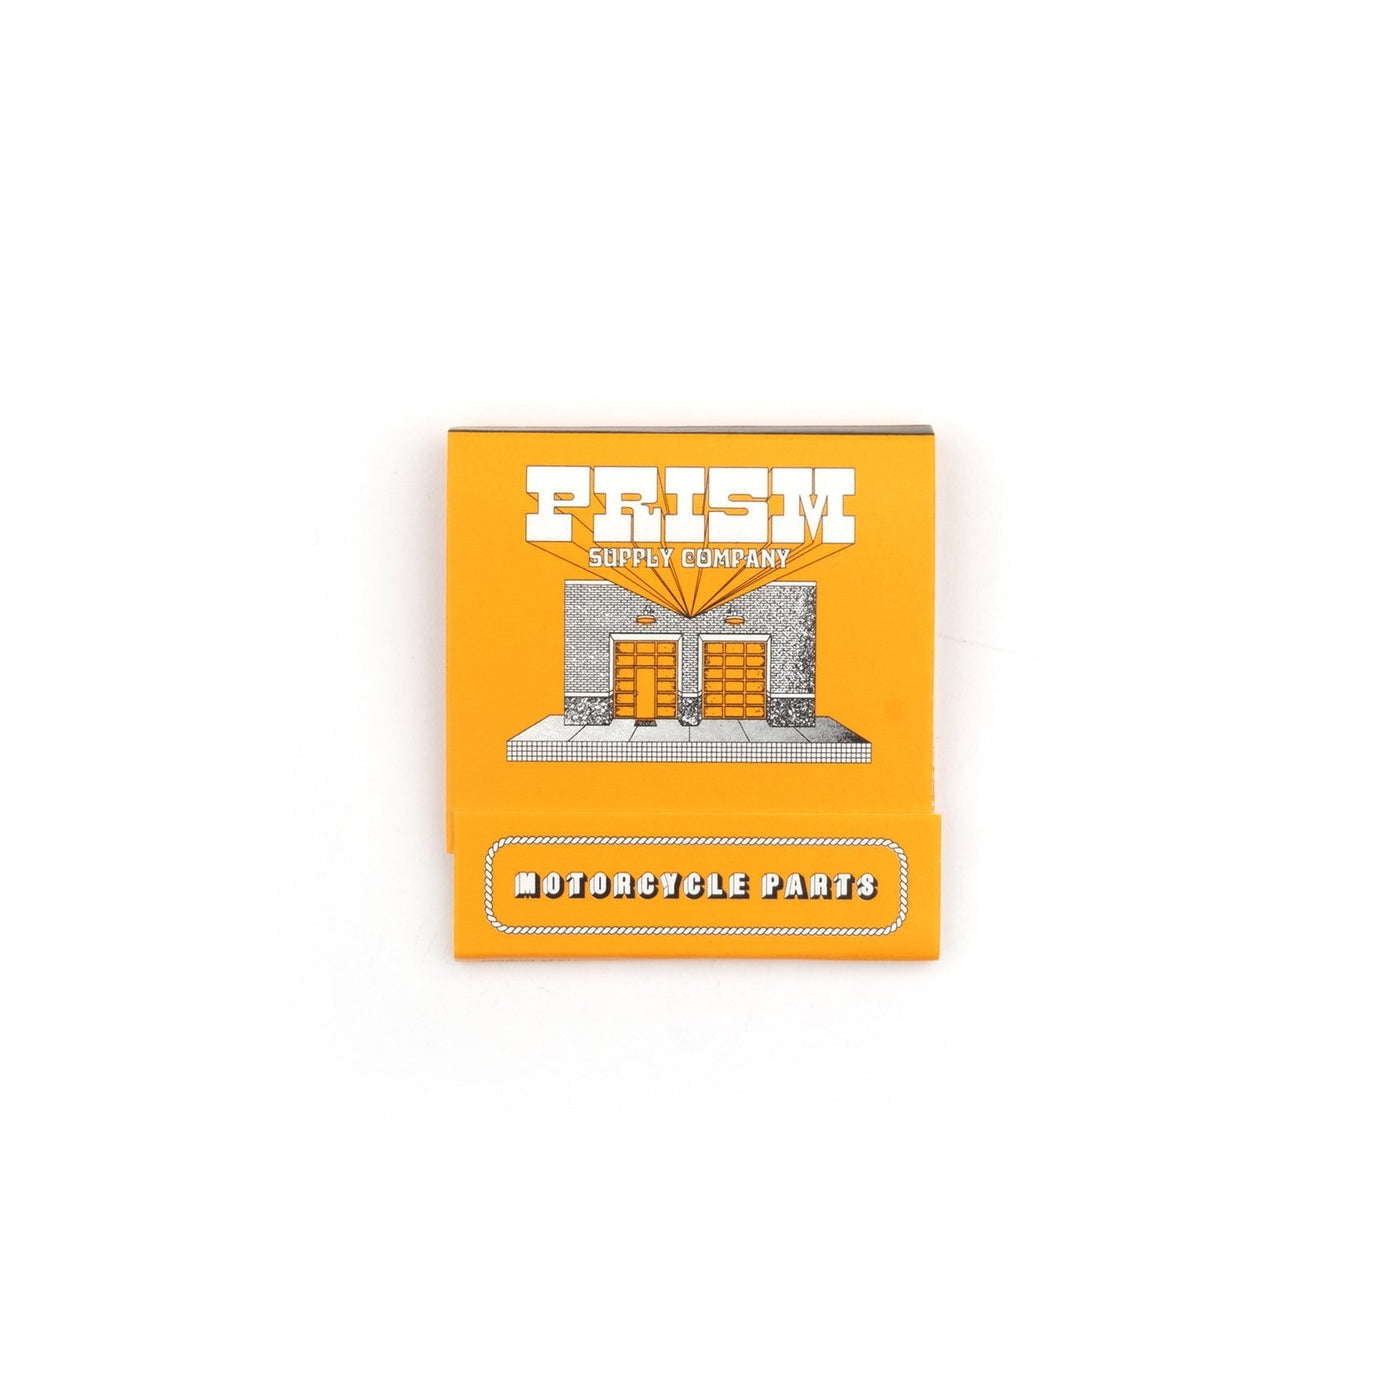 🎁 Prism Matchbook (100% off) - Prism Supply